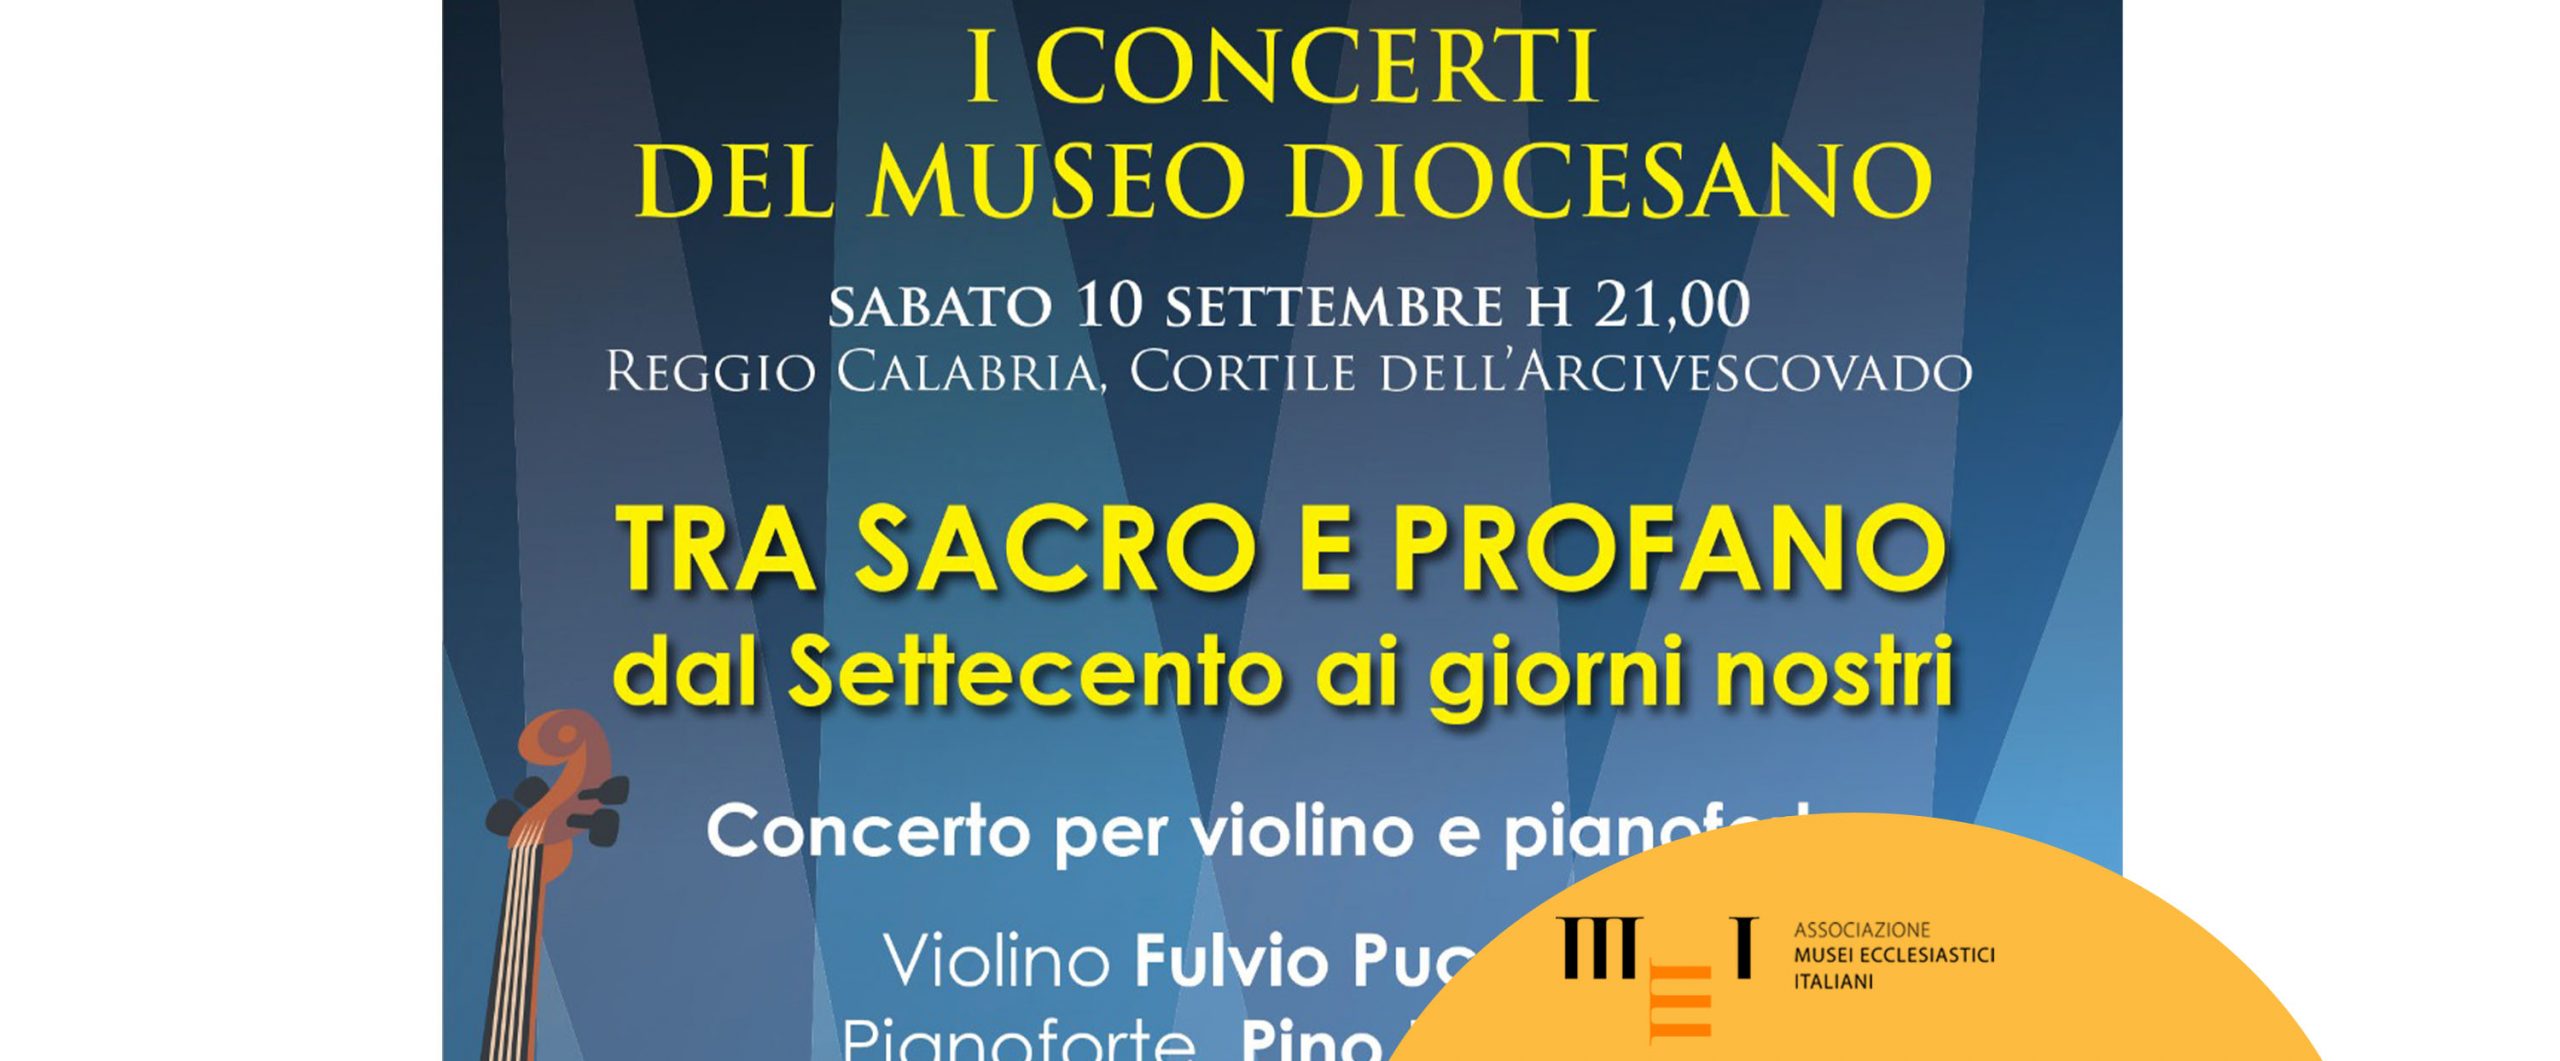 Concerti del Museo Diocesano di Reggio Calabria - 10 settembre 2022